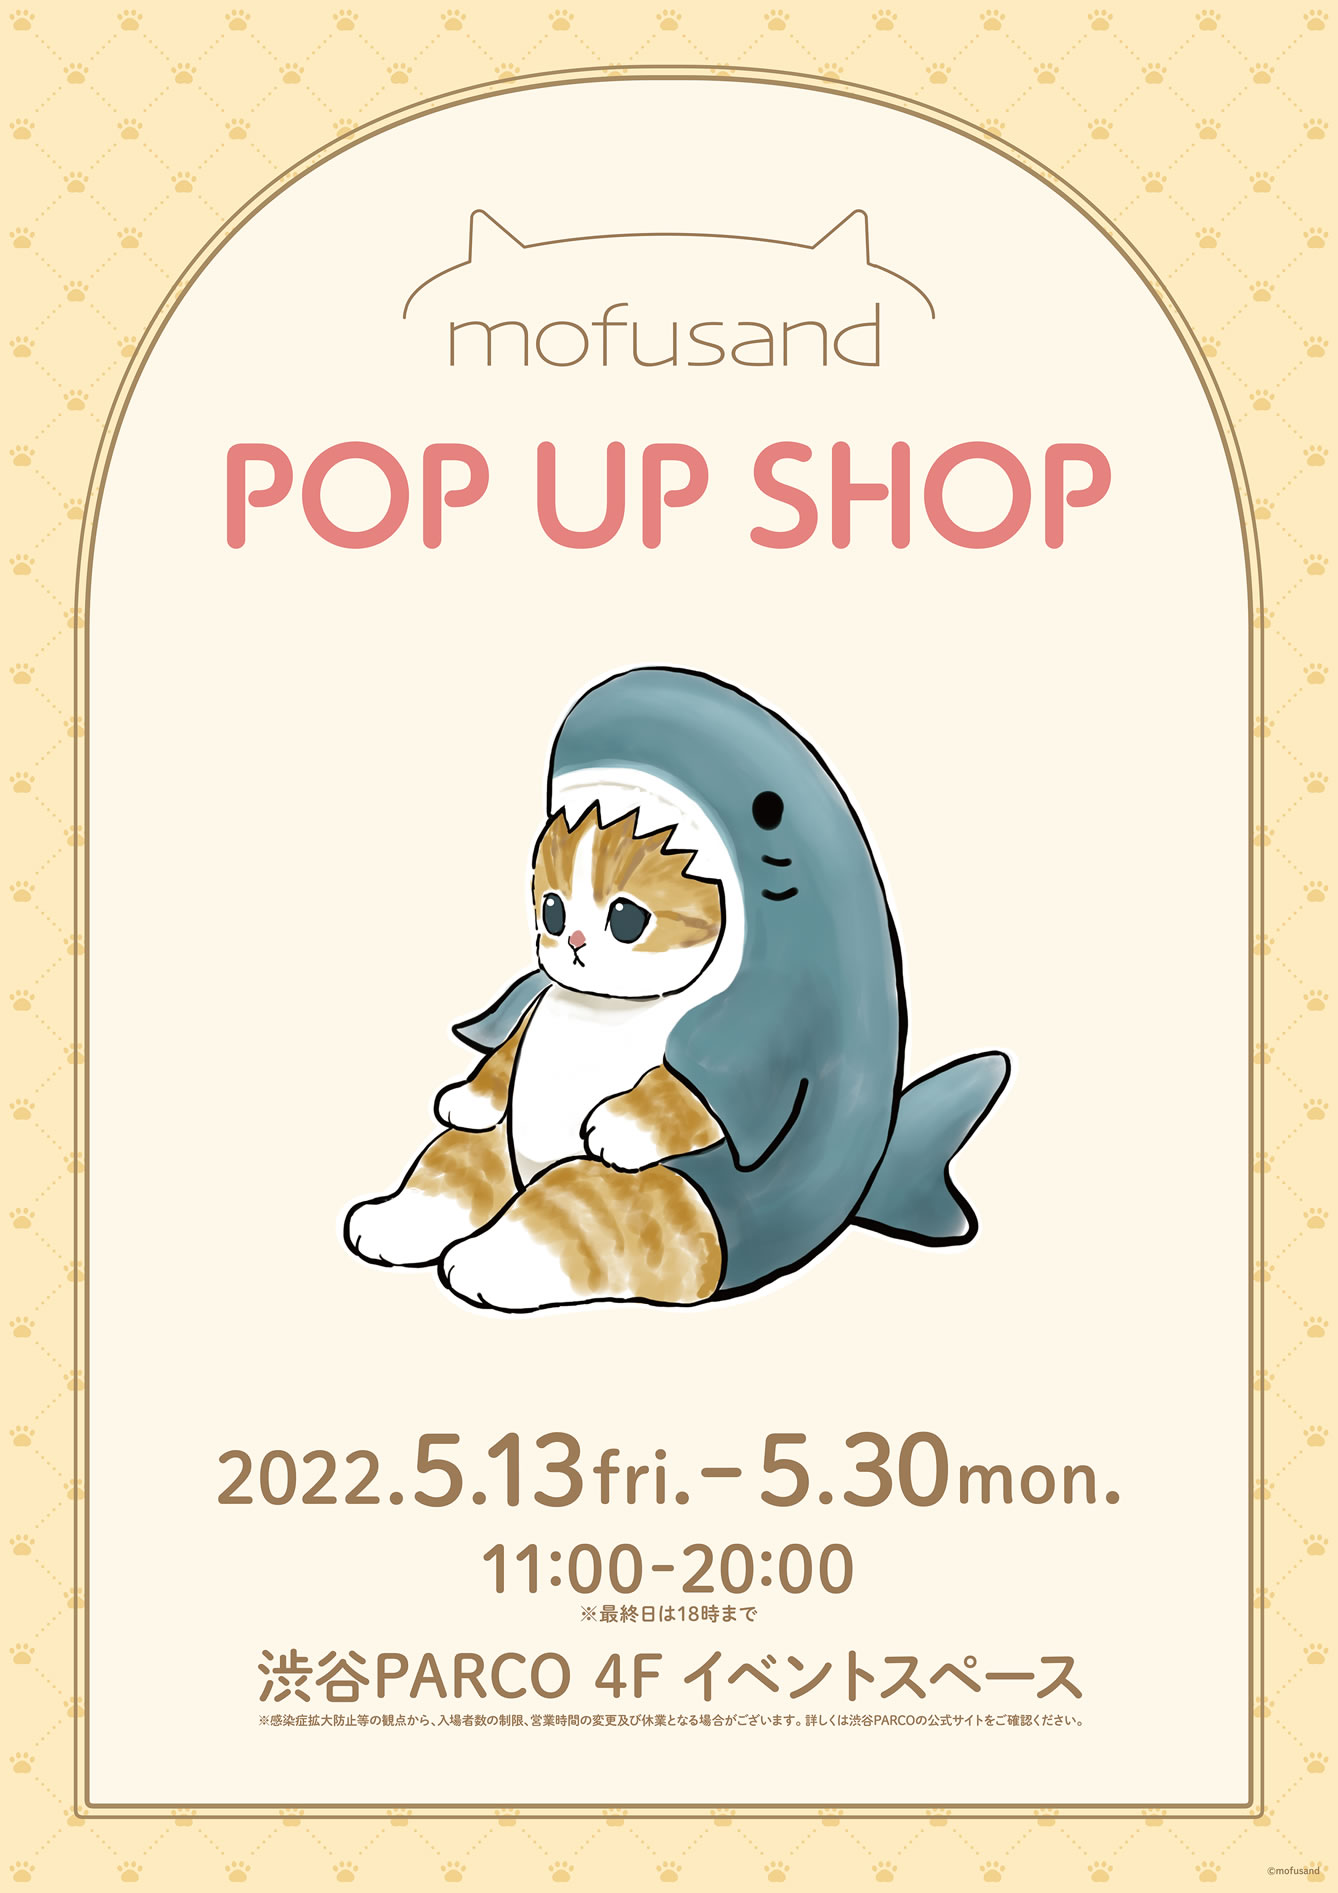 mofusand POP UP SHOP 渋谷PARCO